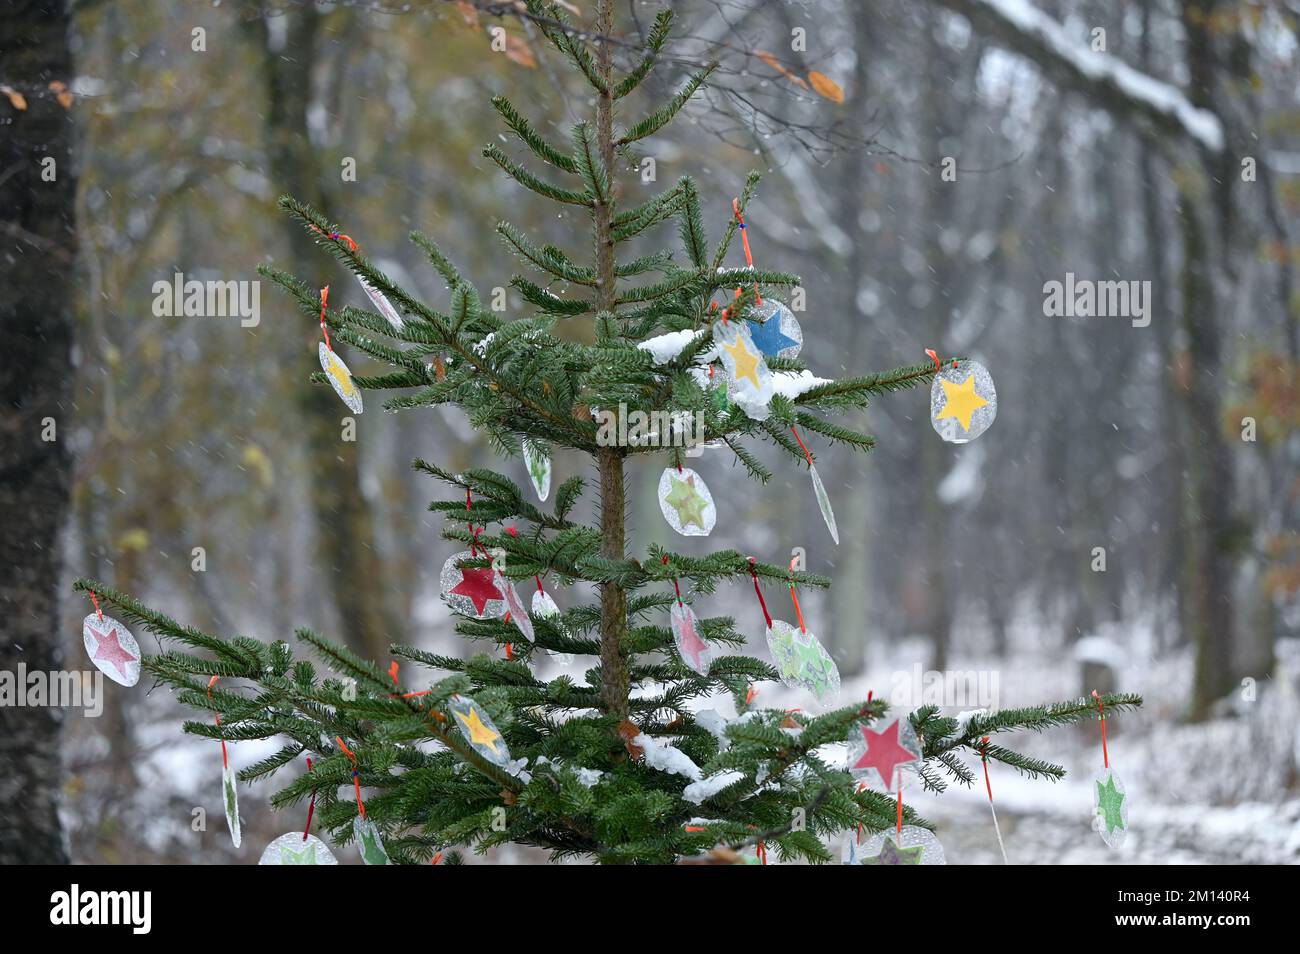 Kassel, Germania. 07th Dec, 2022. Un albero di Natale decorato si trova nella foresta di Habichtswald. Lungo il percorso natalizio Fairy tale, lungo 3,2 chilometri, si ergono 15 alberi di Natale a intervalli di circa 200 metri, decorati da bambini di asili e scuole elementari a Kassel e nei dintorni. Ogni albero ha una targa con una fiaba diversa dei Fratelli Grimm. (A dpa in Assia, è bello camminare anche in inverno) Credit: Uwe Zucchi/dpa/Alamy Live News Foto Stock